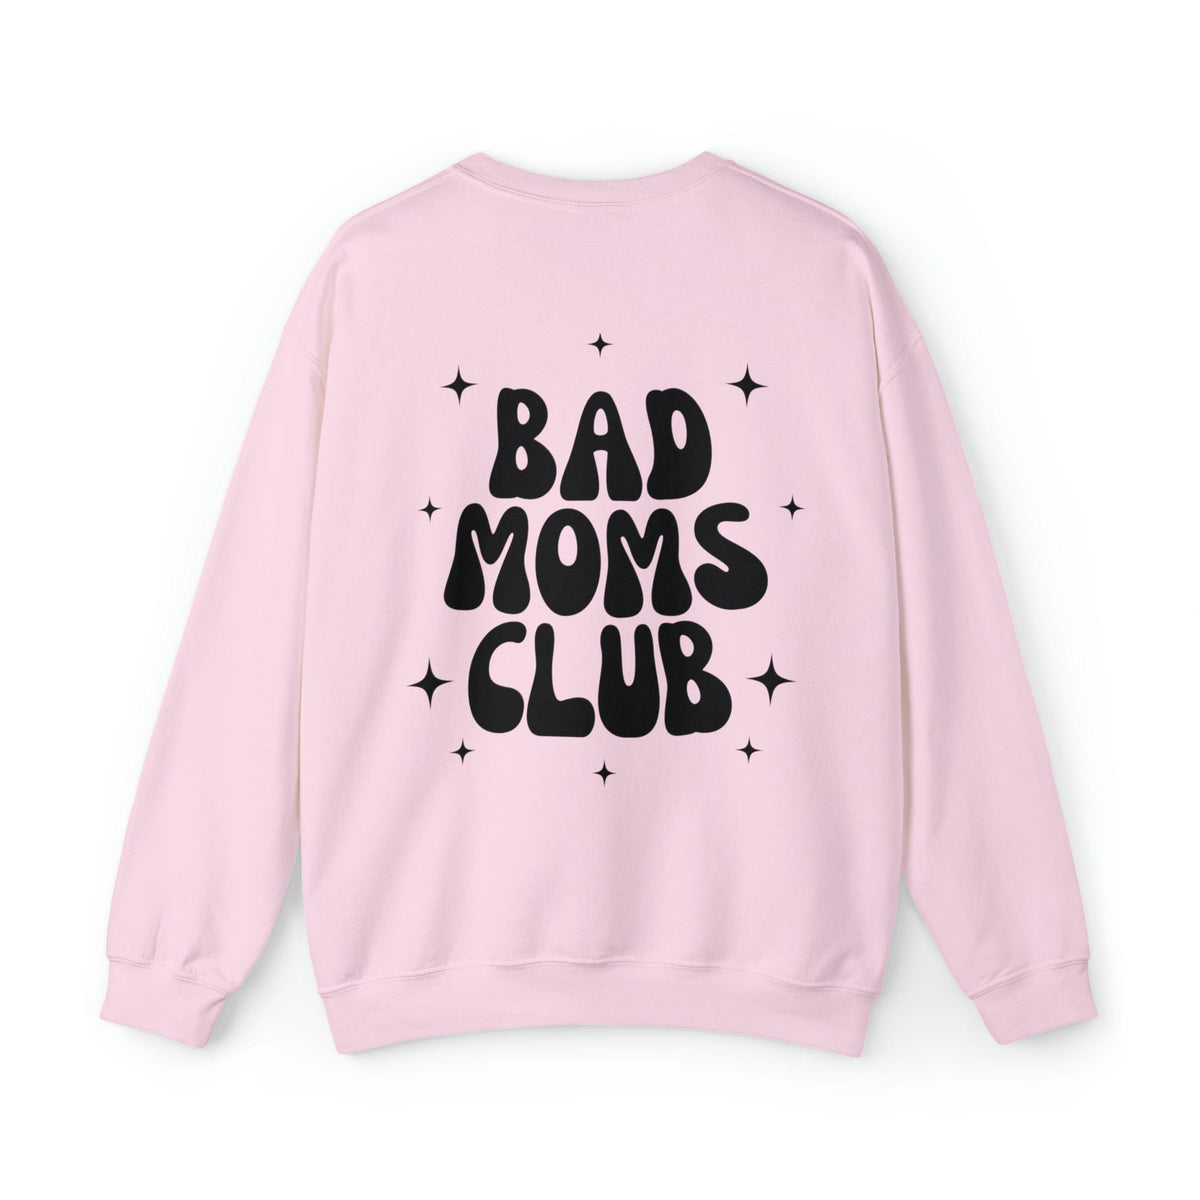 Bad Moms Club Crewneck Sweatshirt Sweatshirt TheFringeCultureCollective